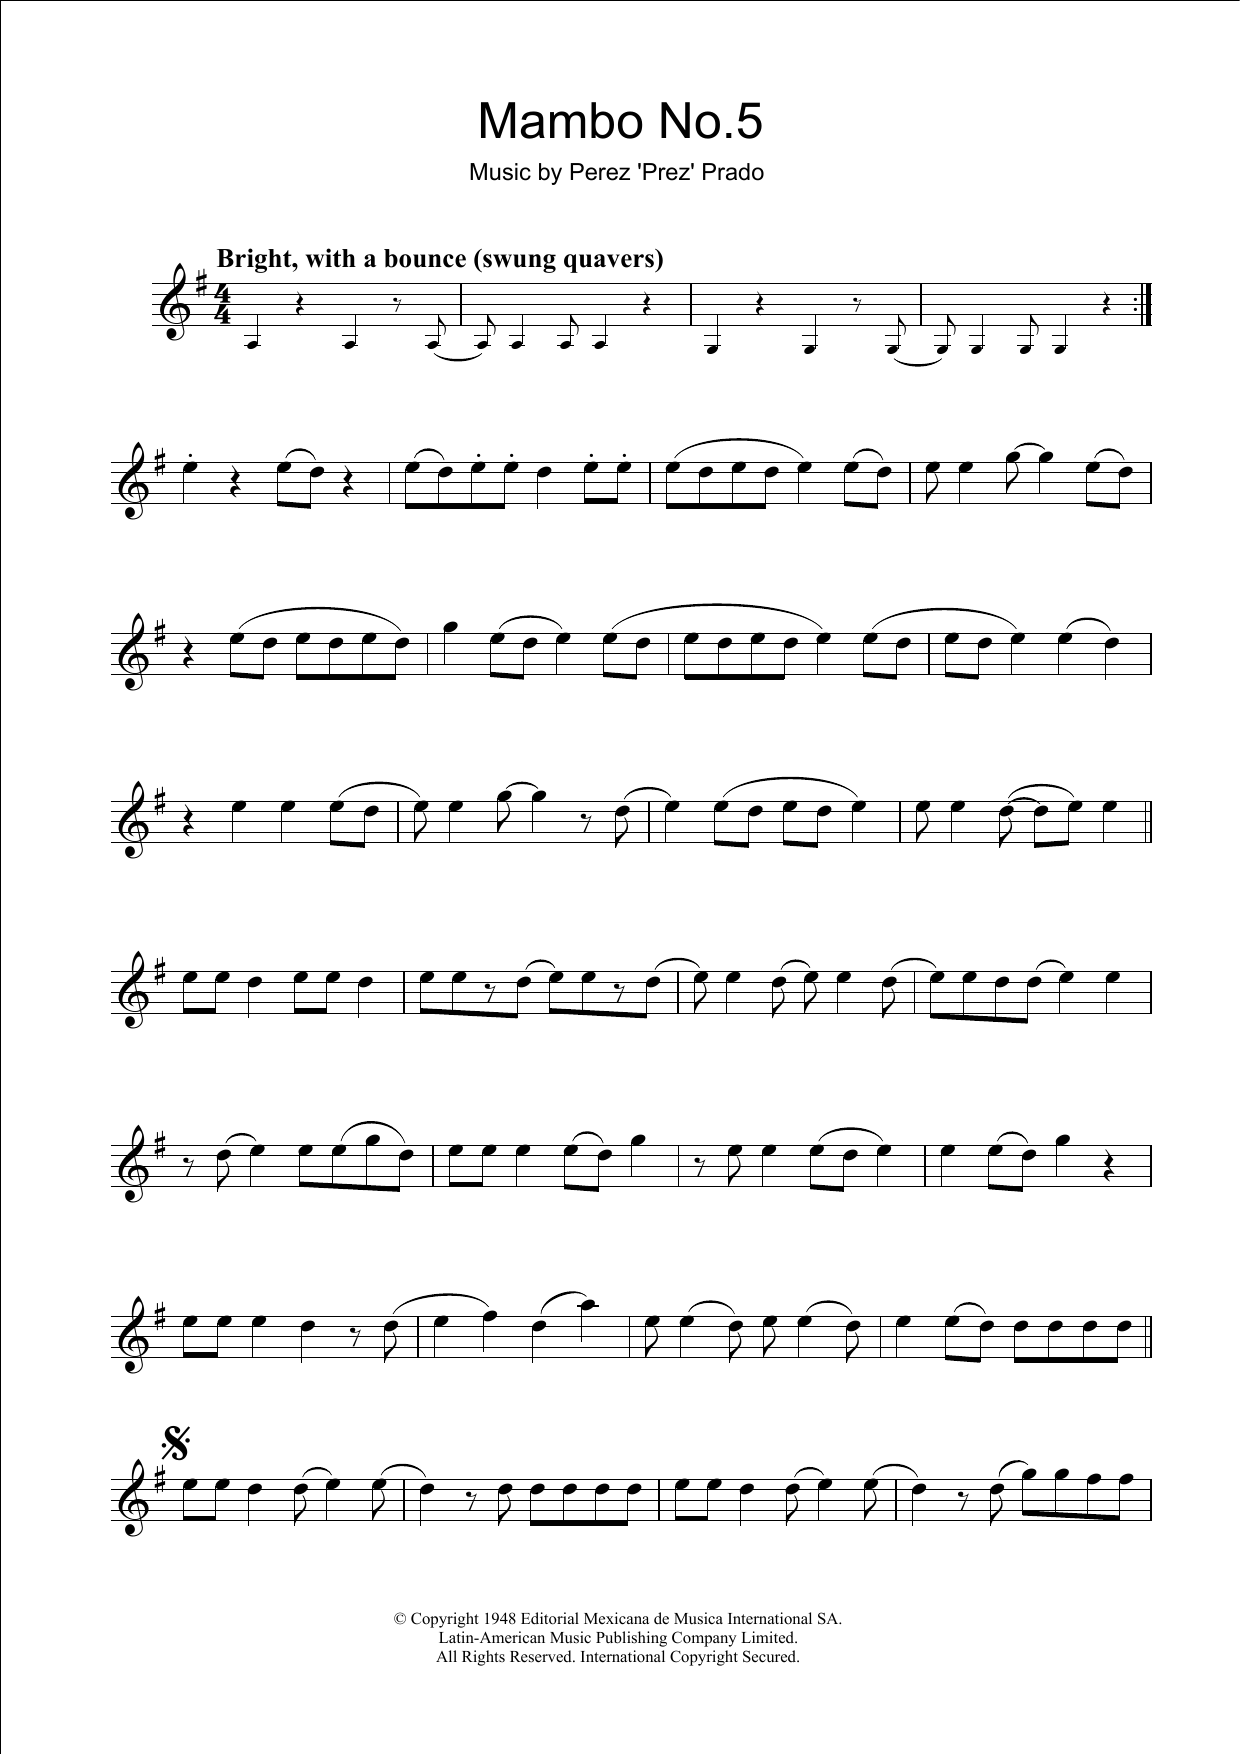 Perez Prado Mambo No. 5 Sheet Music Notes & Chords for Violin - Download or Print PDF